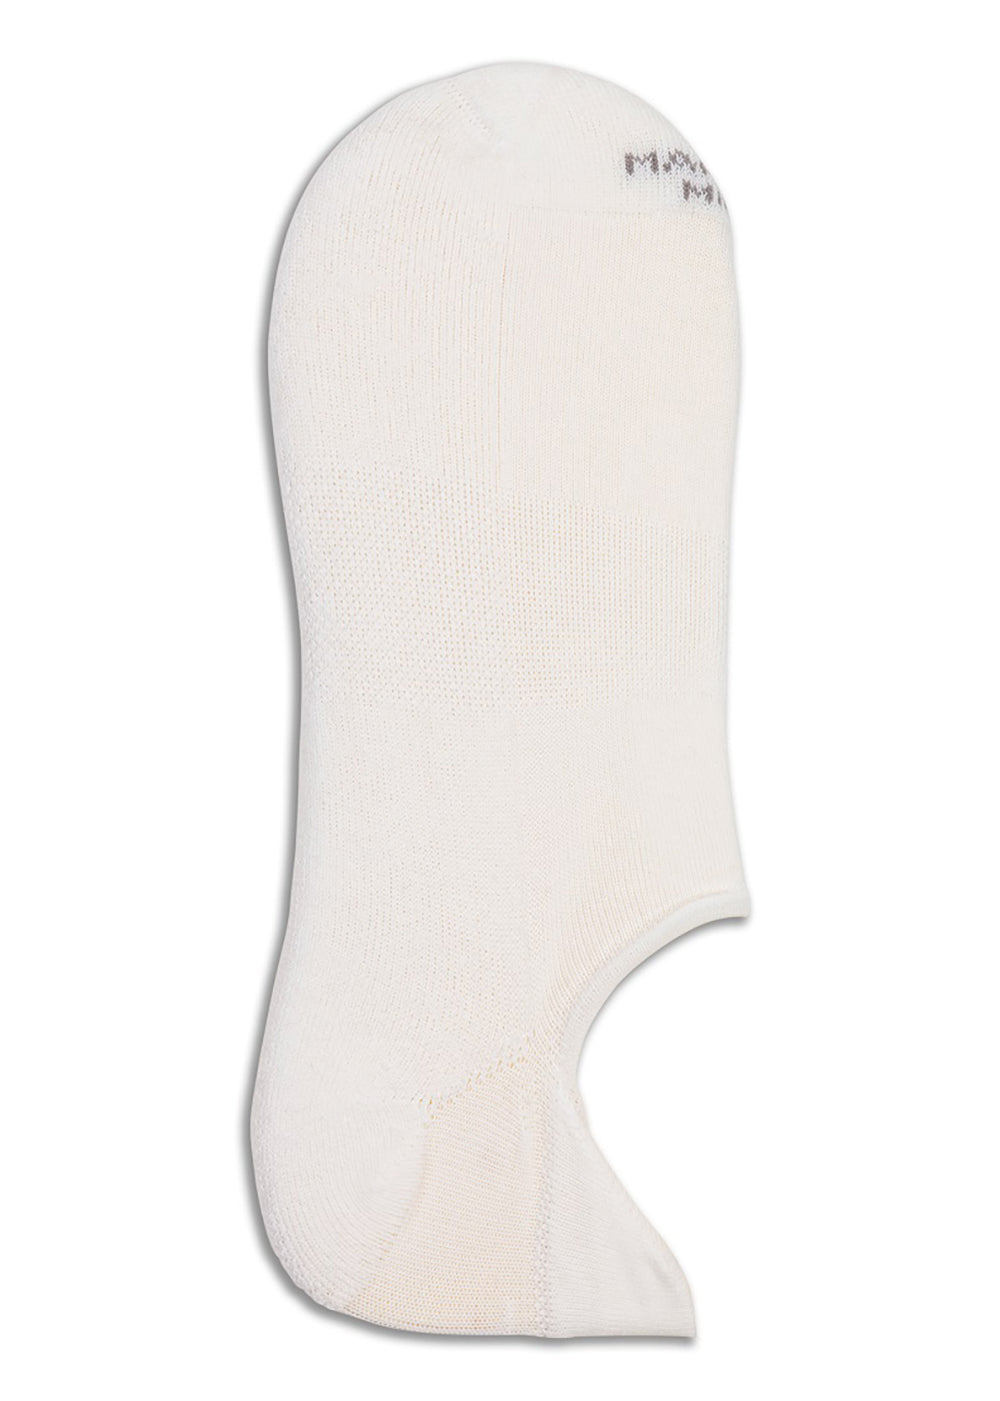 Cotton Sneaker Sock - White - Marcoliani Canada - Danali